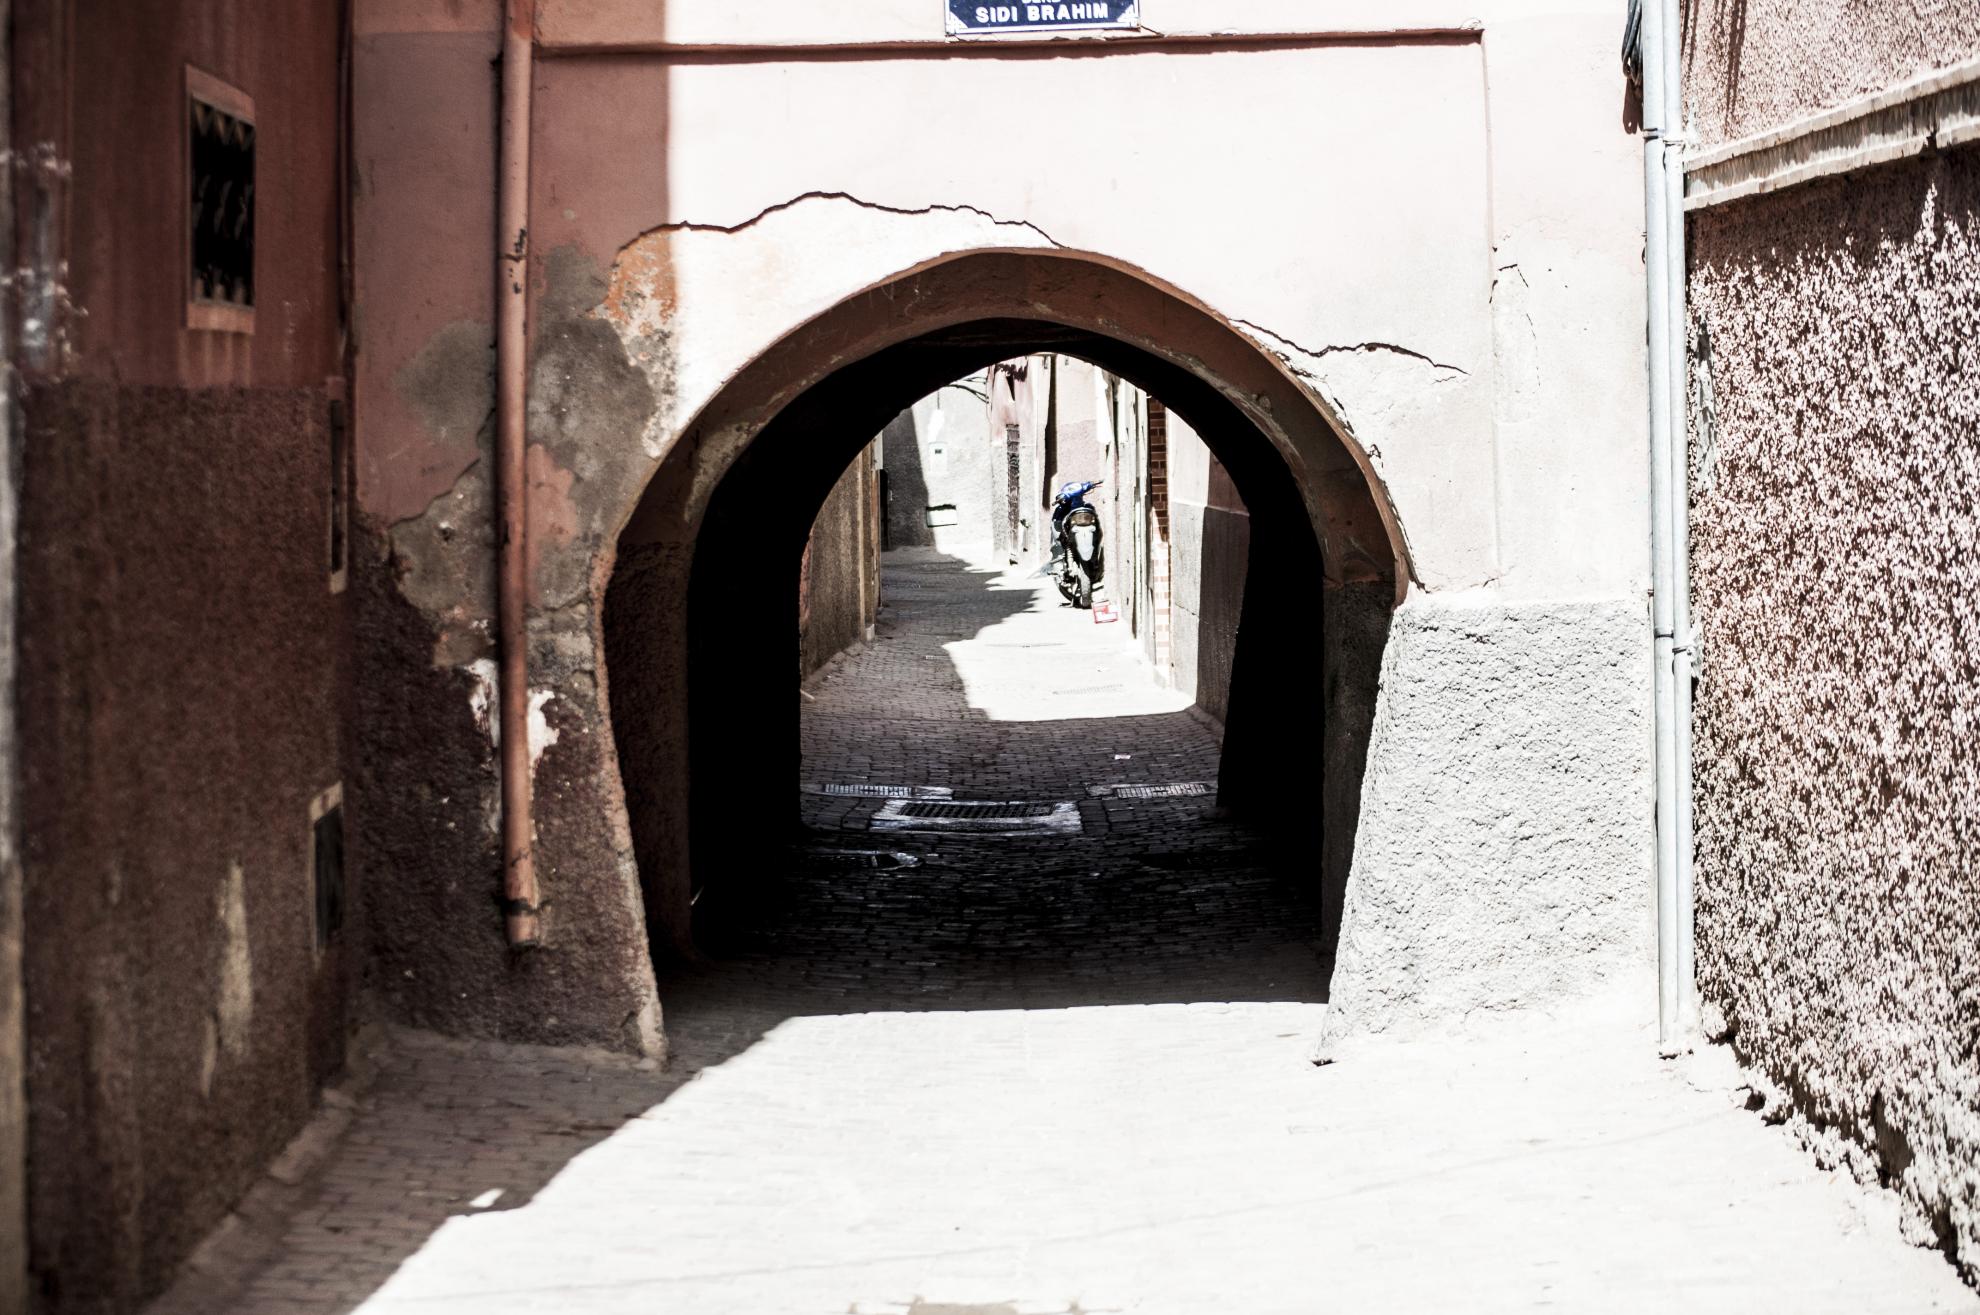 marrakech3